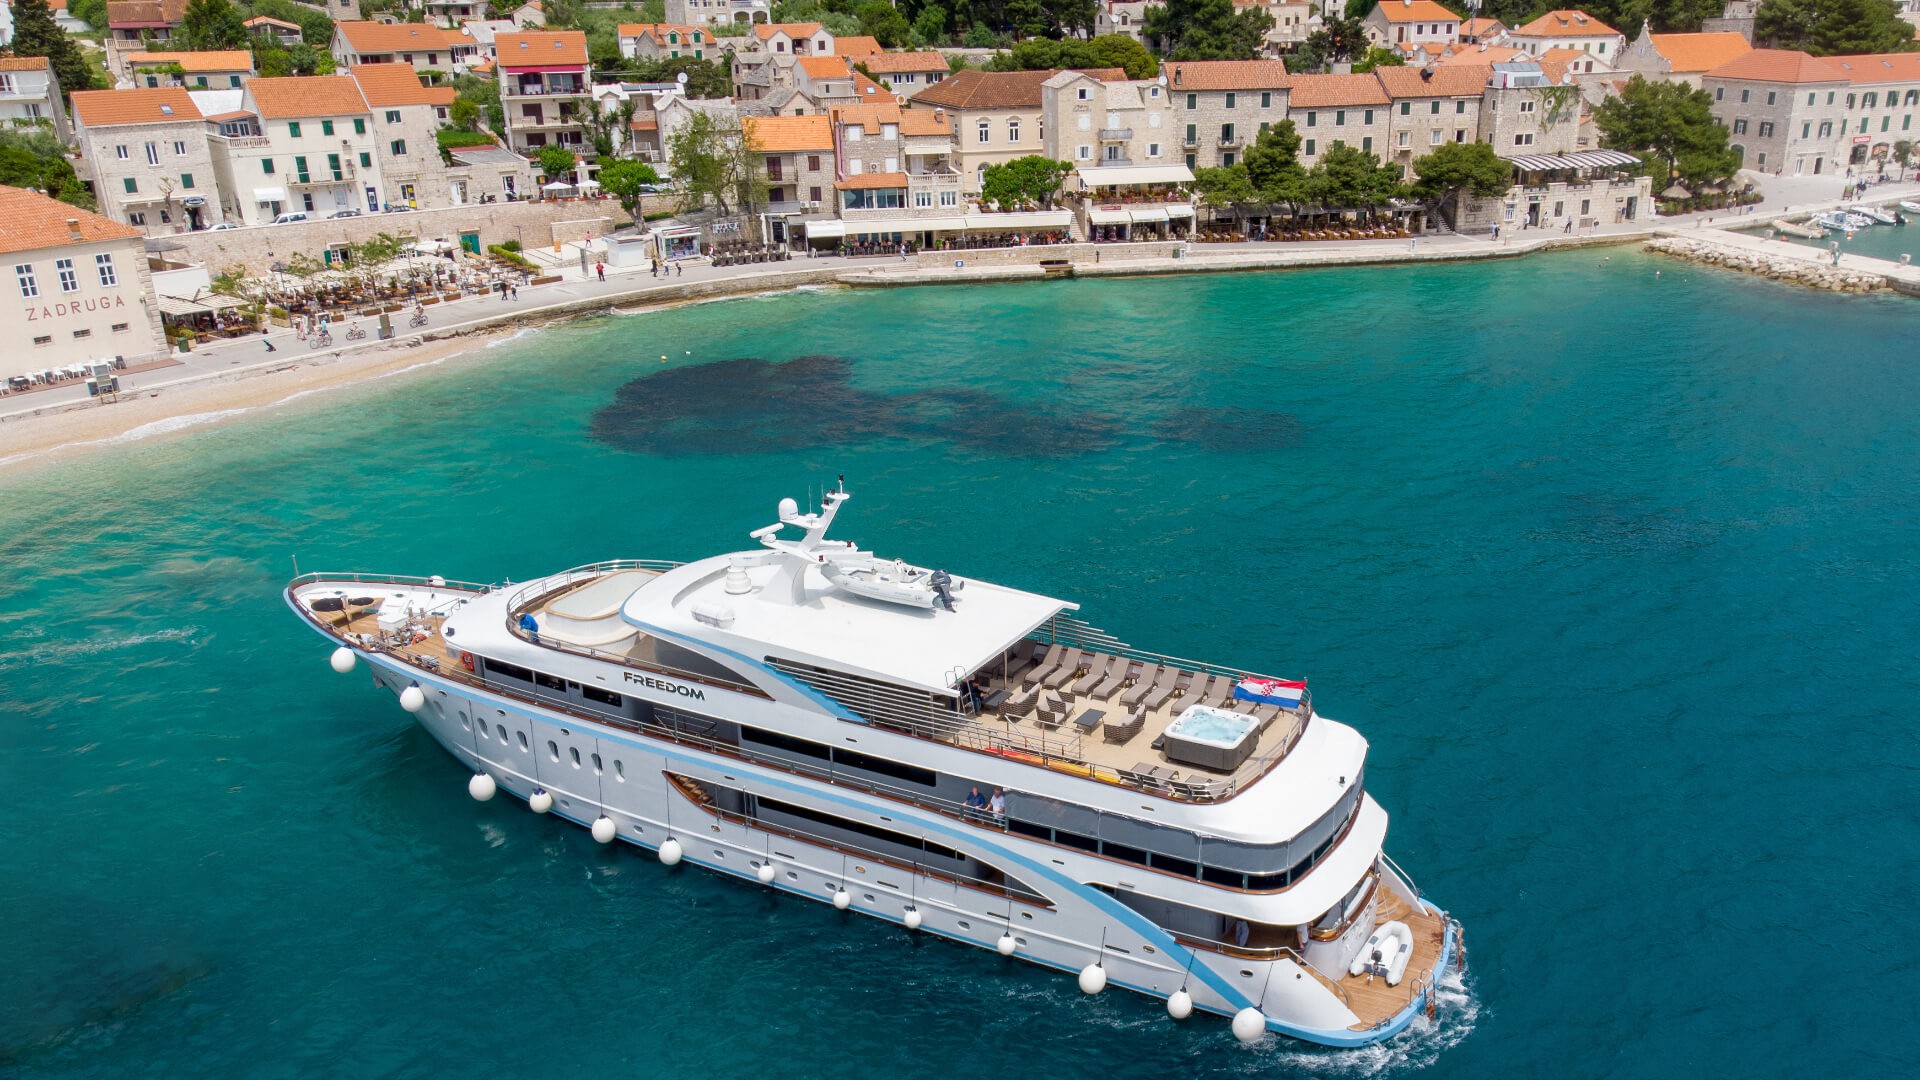 adriatic cruise october